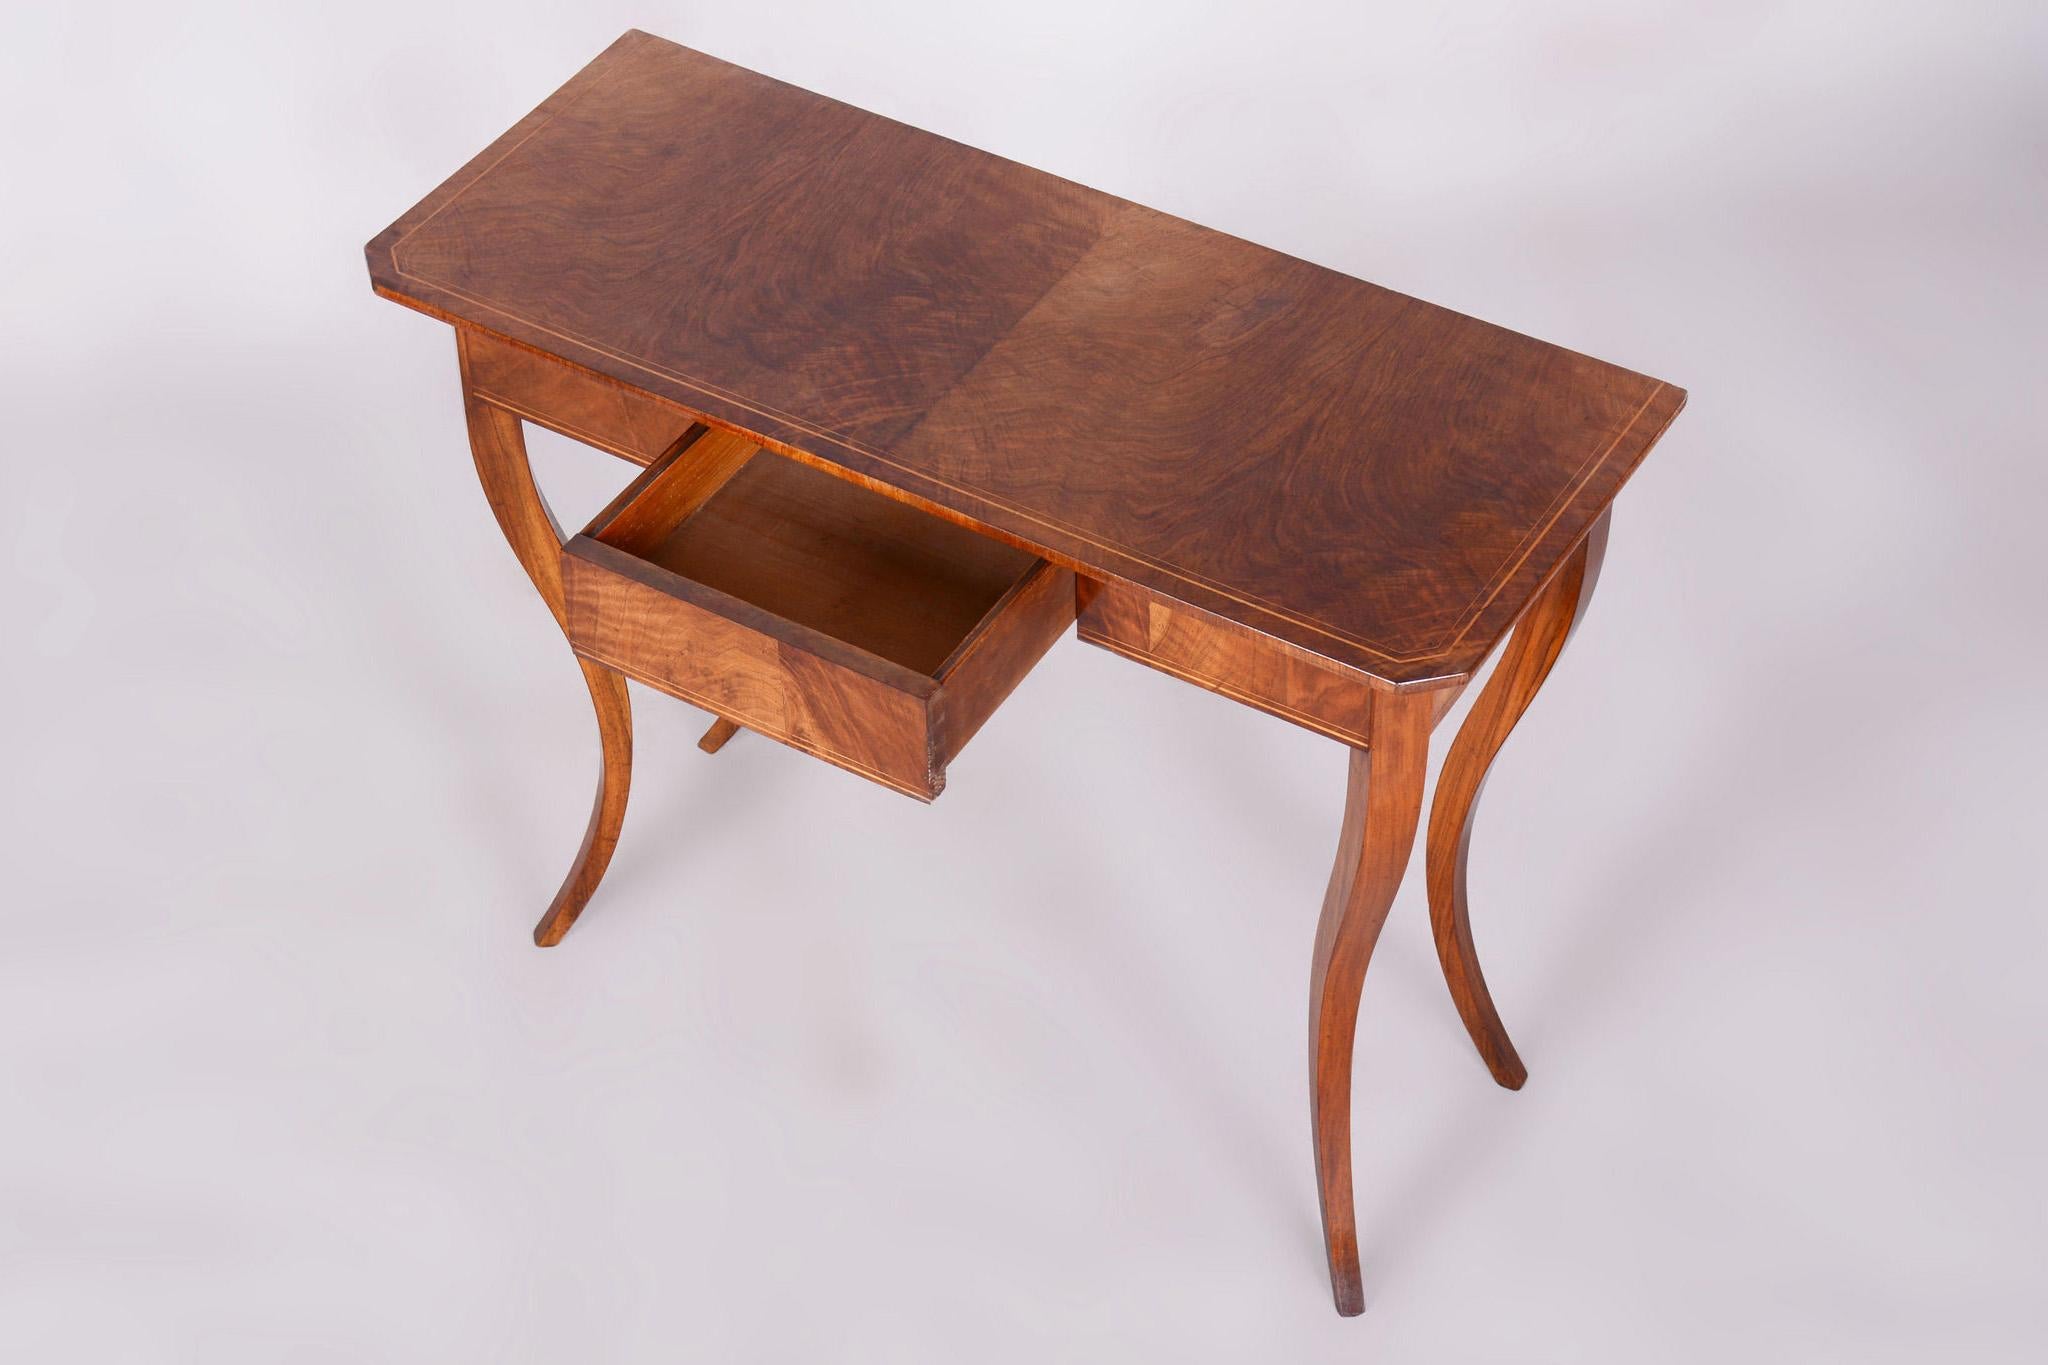 Restored Small Biedermeier Side Table, Walnut, Spruce, Maple, Austria, 1820s 2